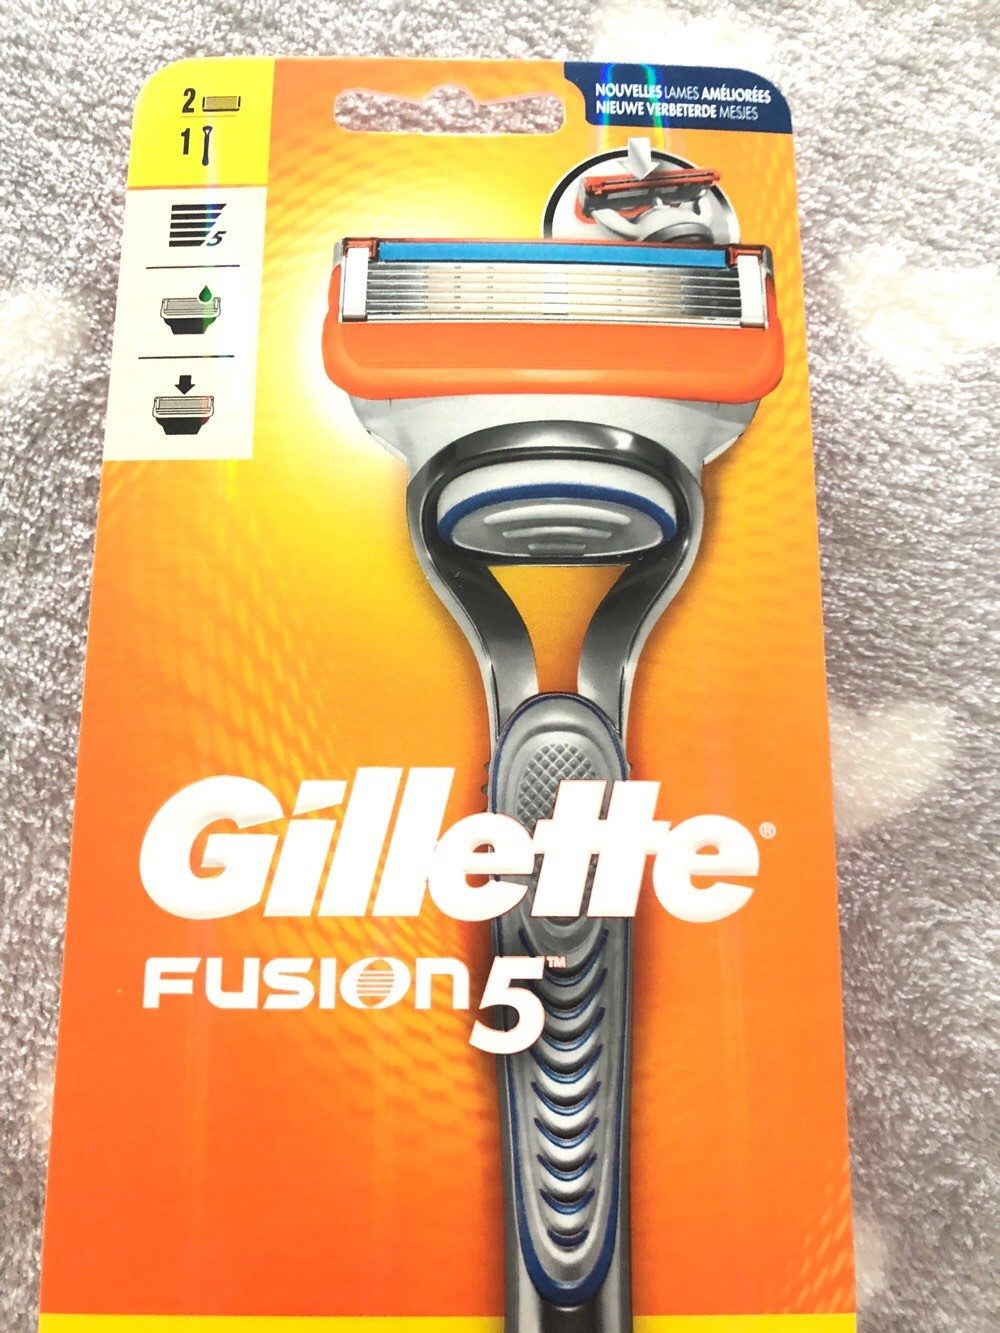 Gillette fusion 5 rasoir - Produit - fr